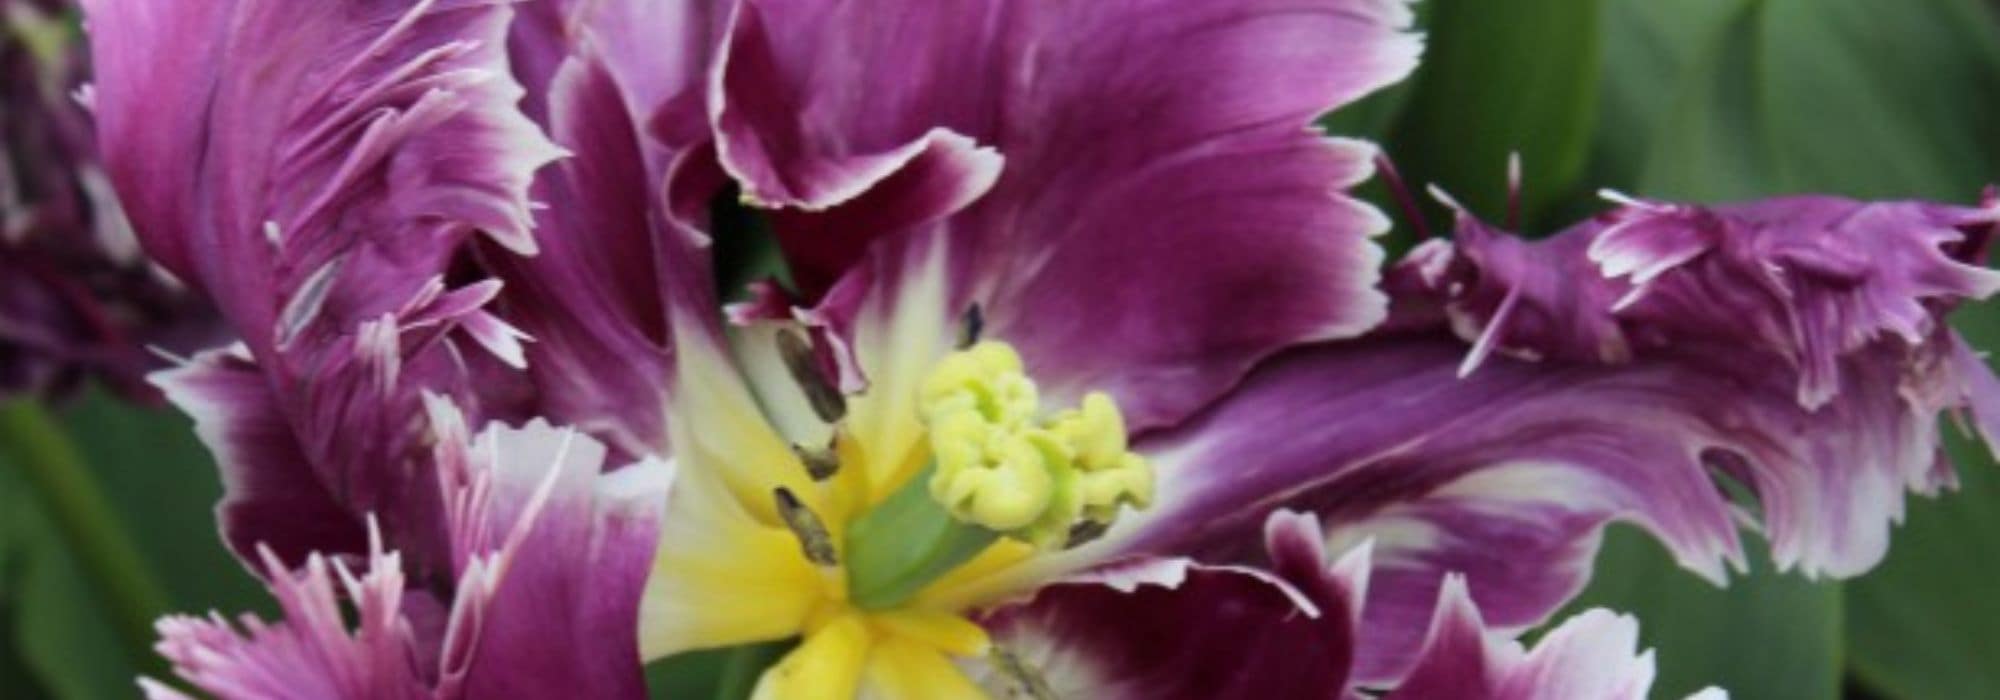 Tulipe perroquet : la plus extravagante